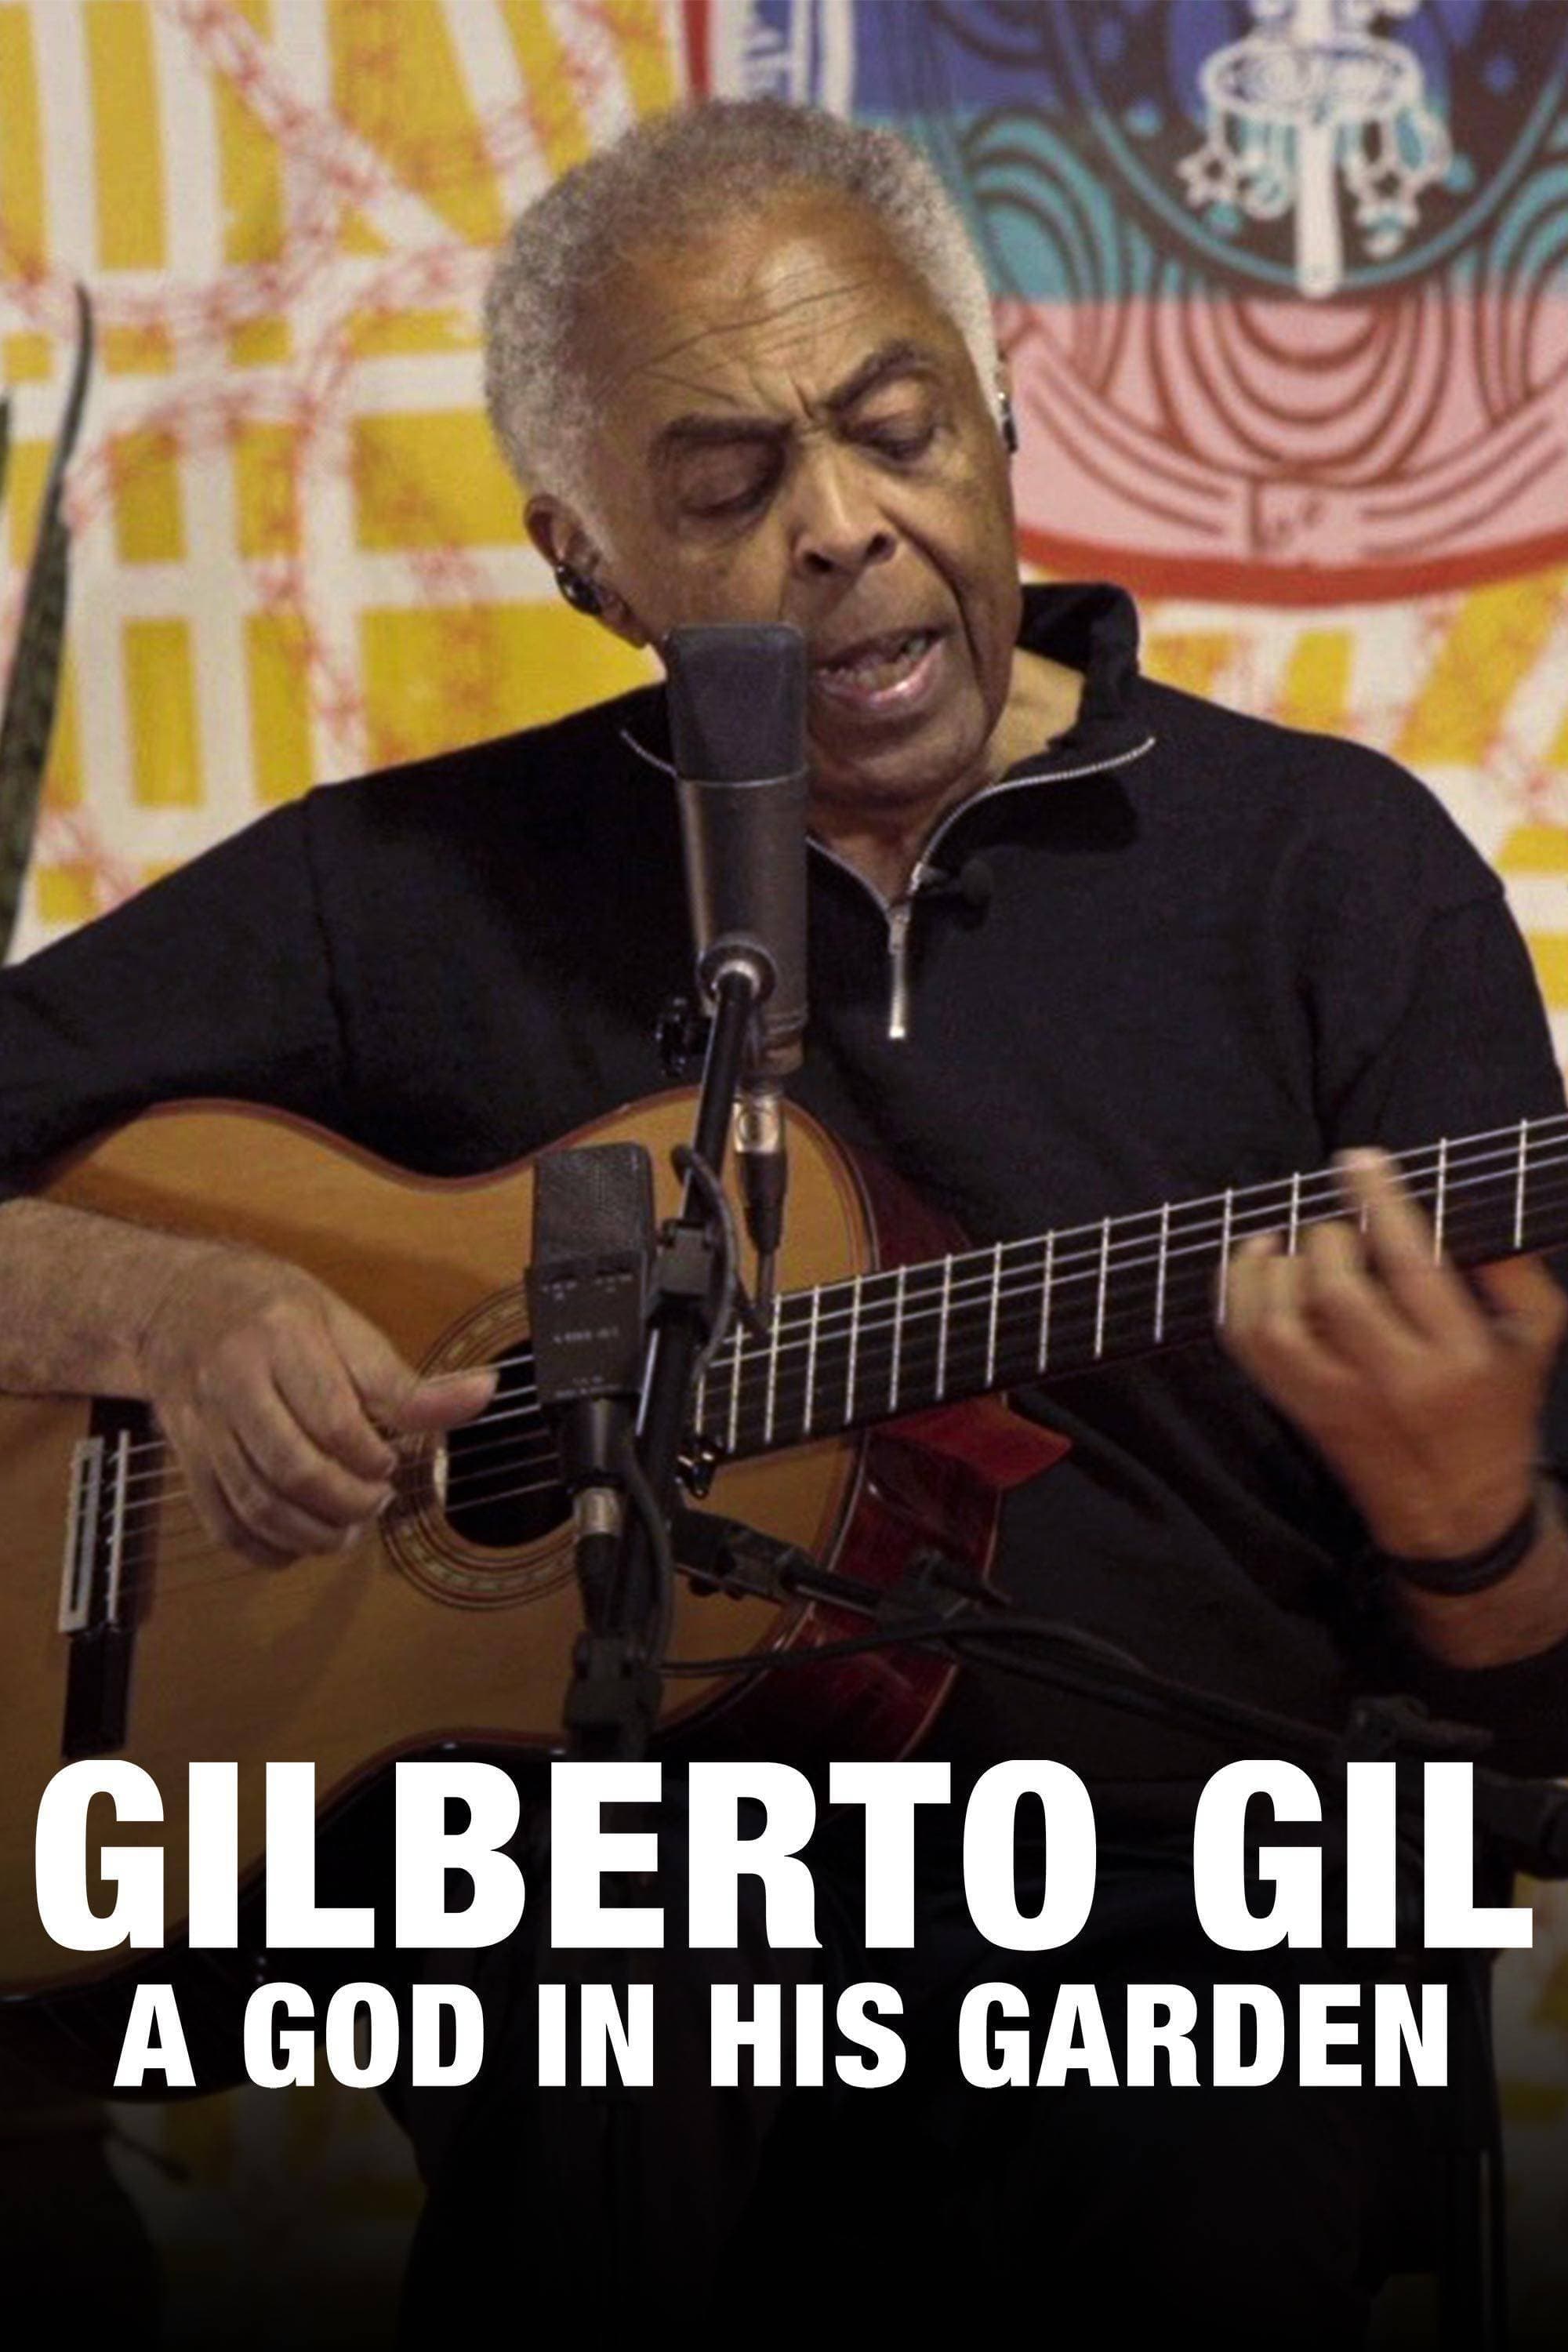 Gilberto Gil: Um Deus em seu Jardim